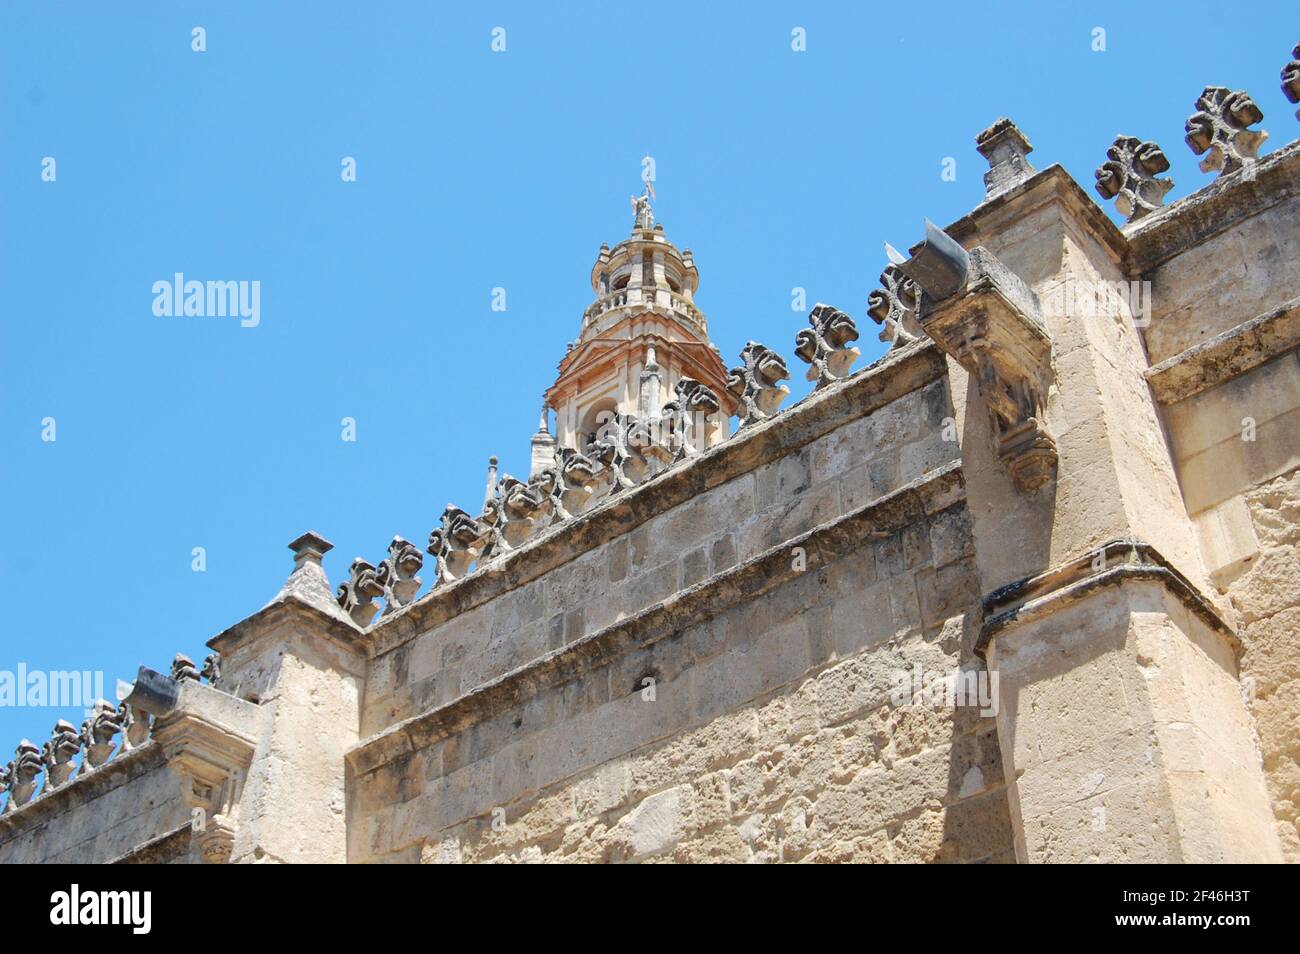 Moschea-Cattedrale di Córdoba (la Cattedrale di nostra Signora dell'Assunzione). Architettura islamica e gotica risalente al 785 d.C. Mezquita de Córdoba. Foto Stock